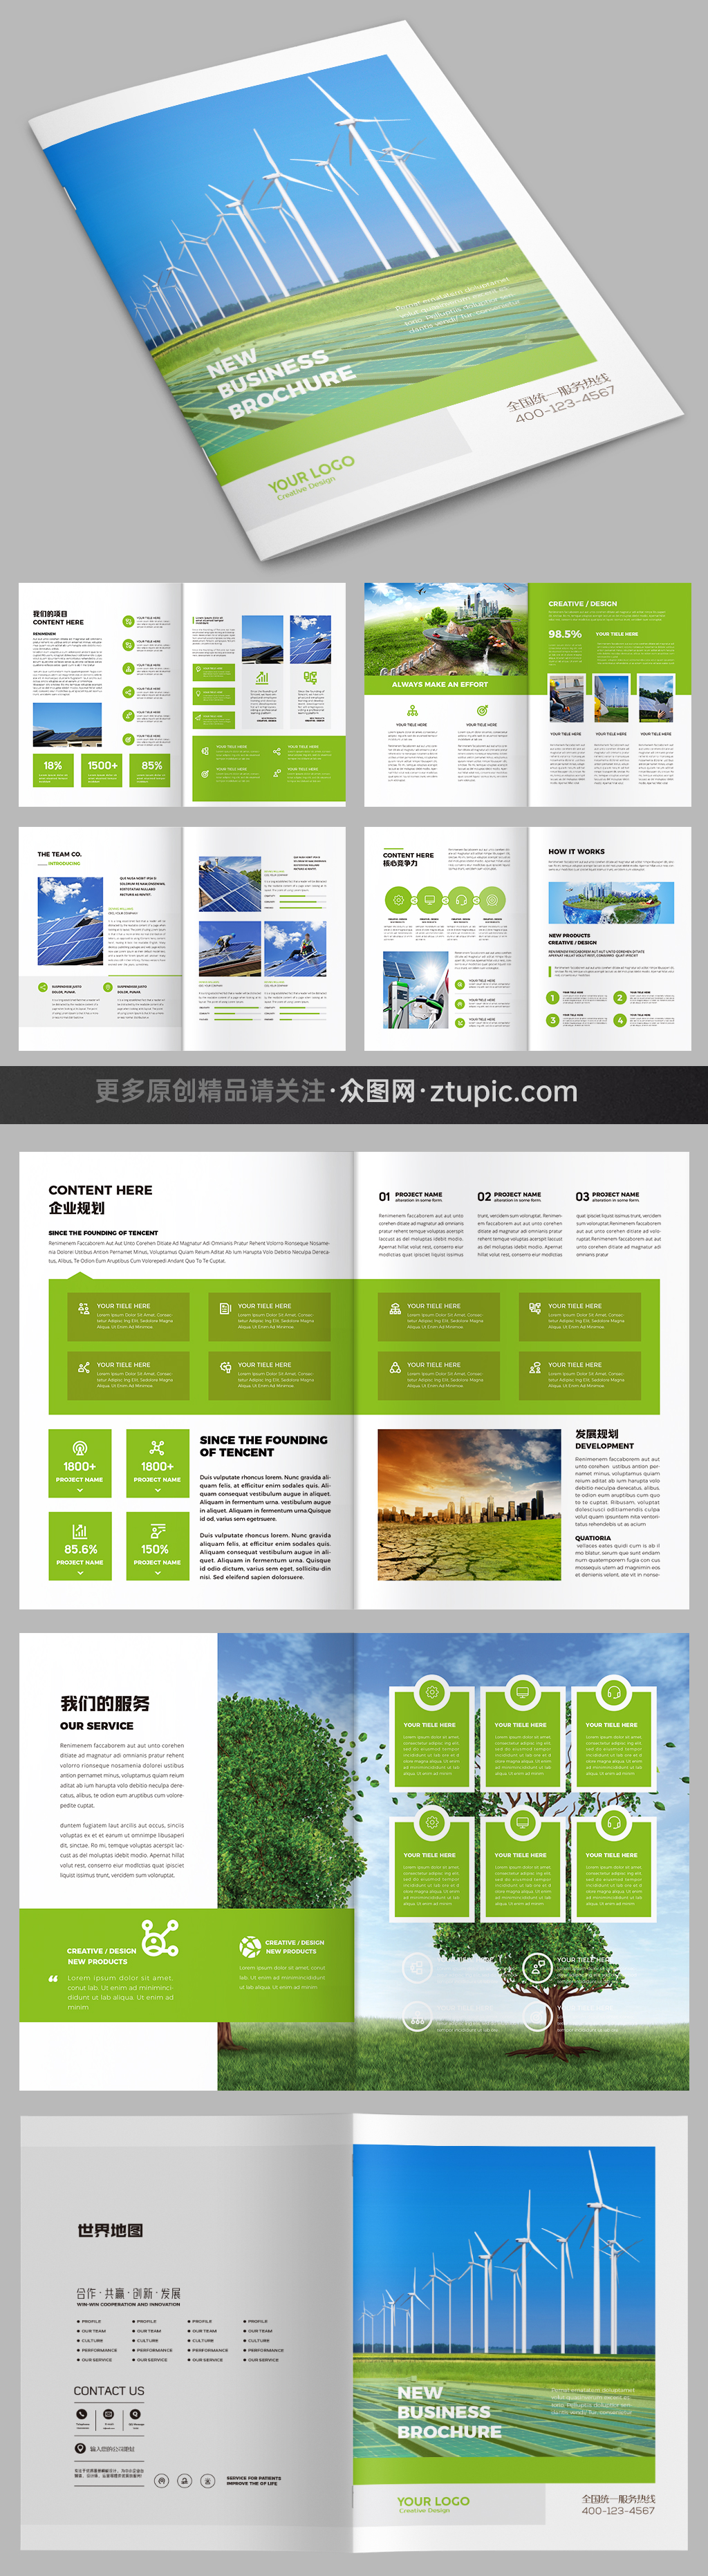 绿色环保宣传册设计模板